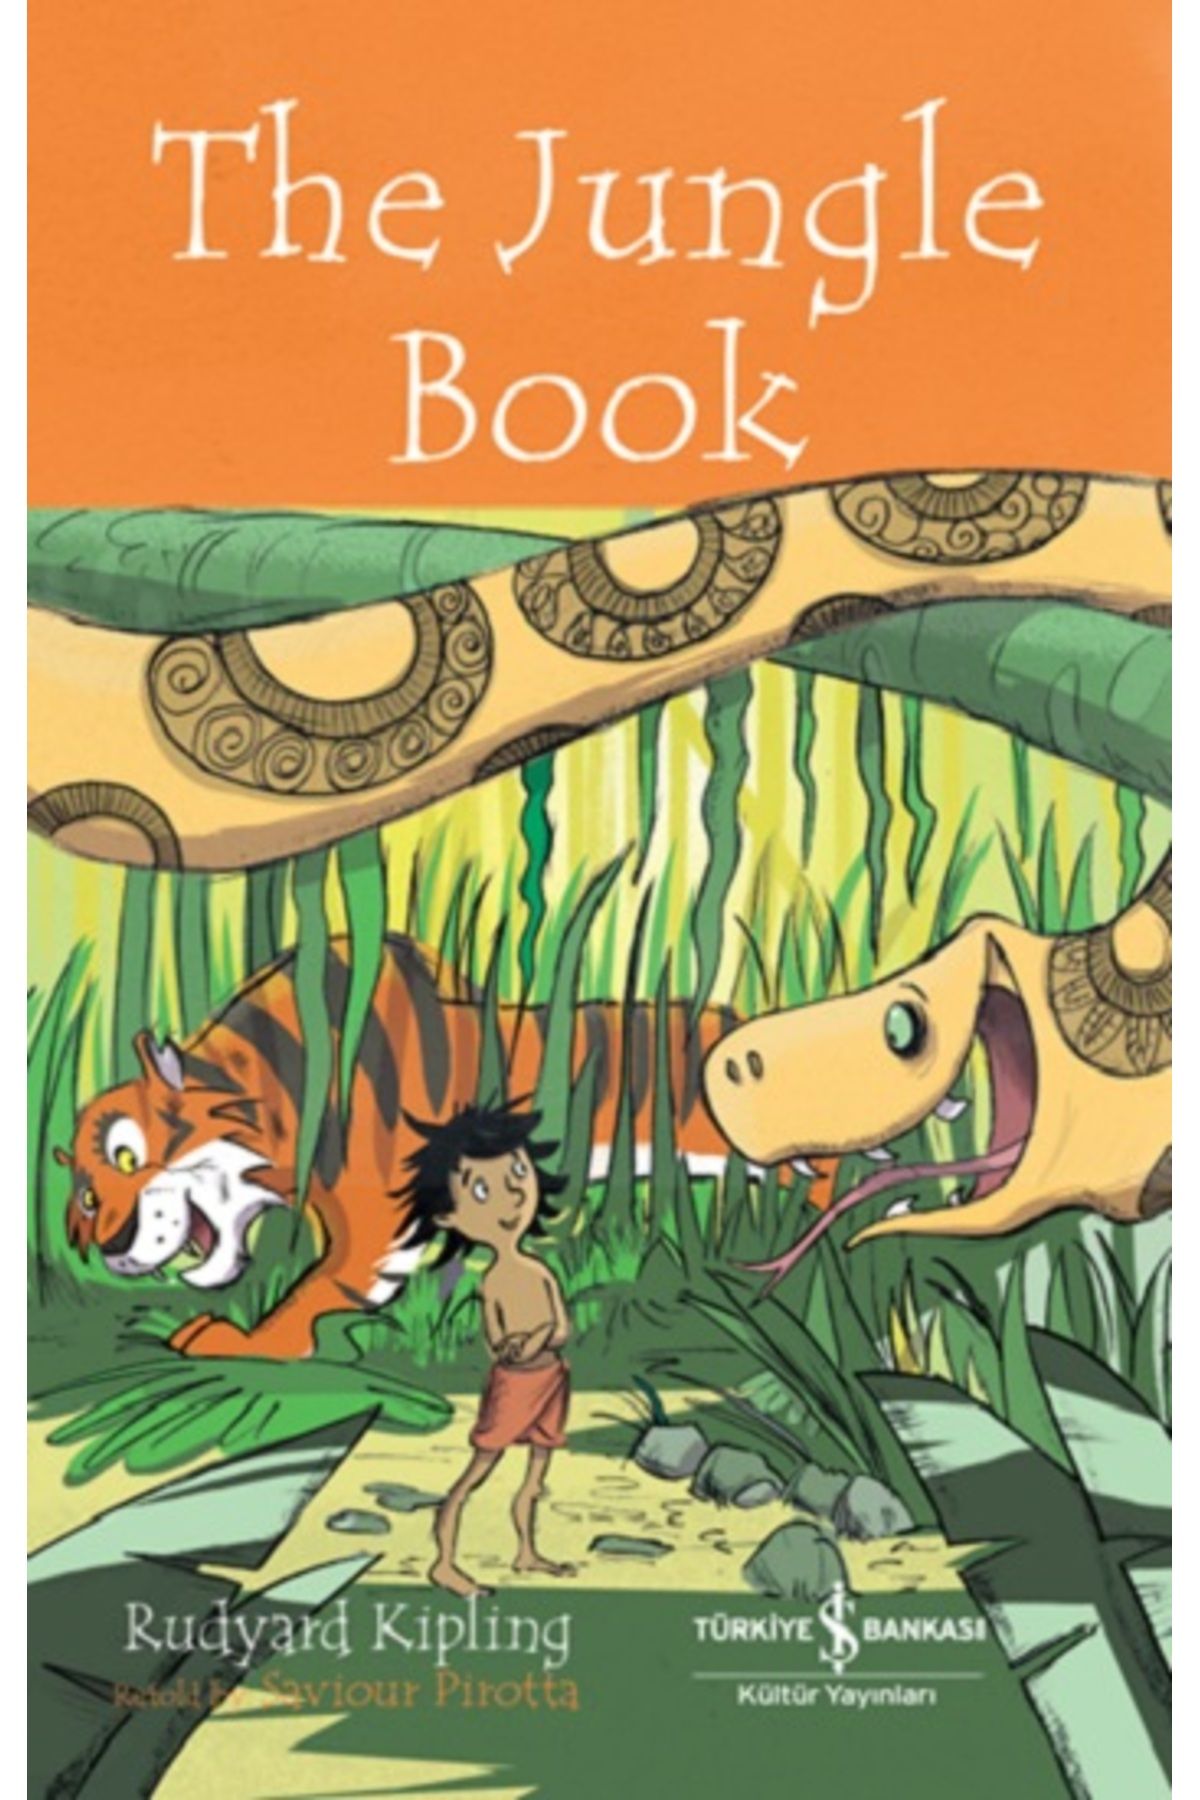 Türkiye İş Bankası Kültür Yayınları The Jungle Book